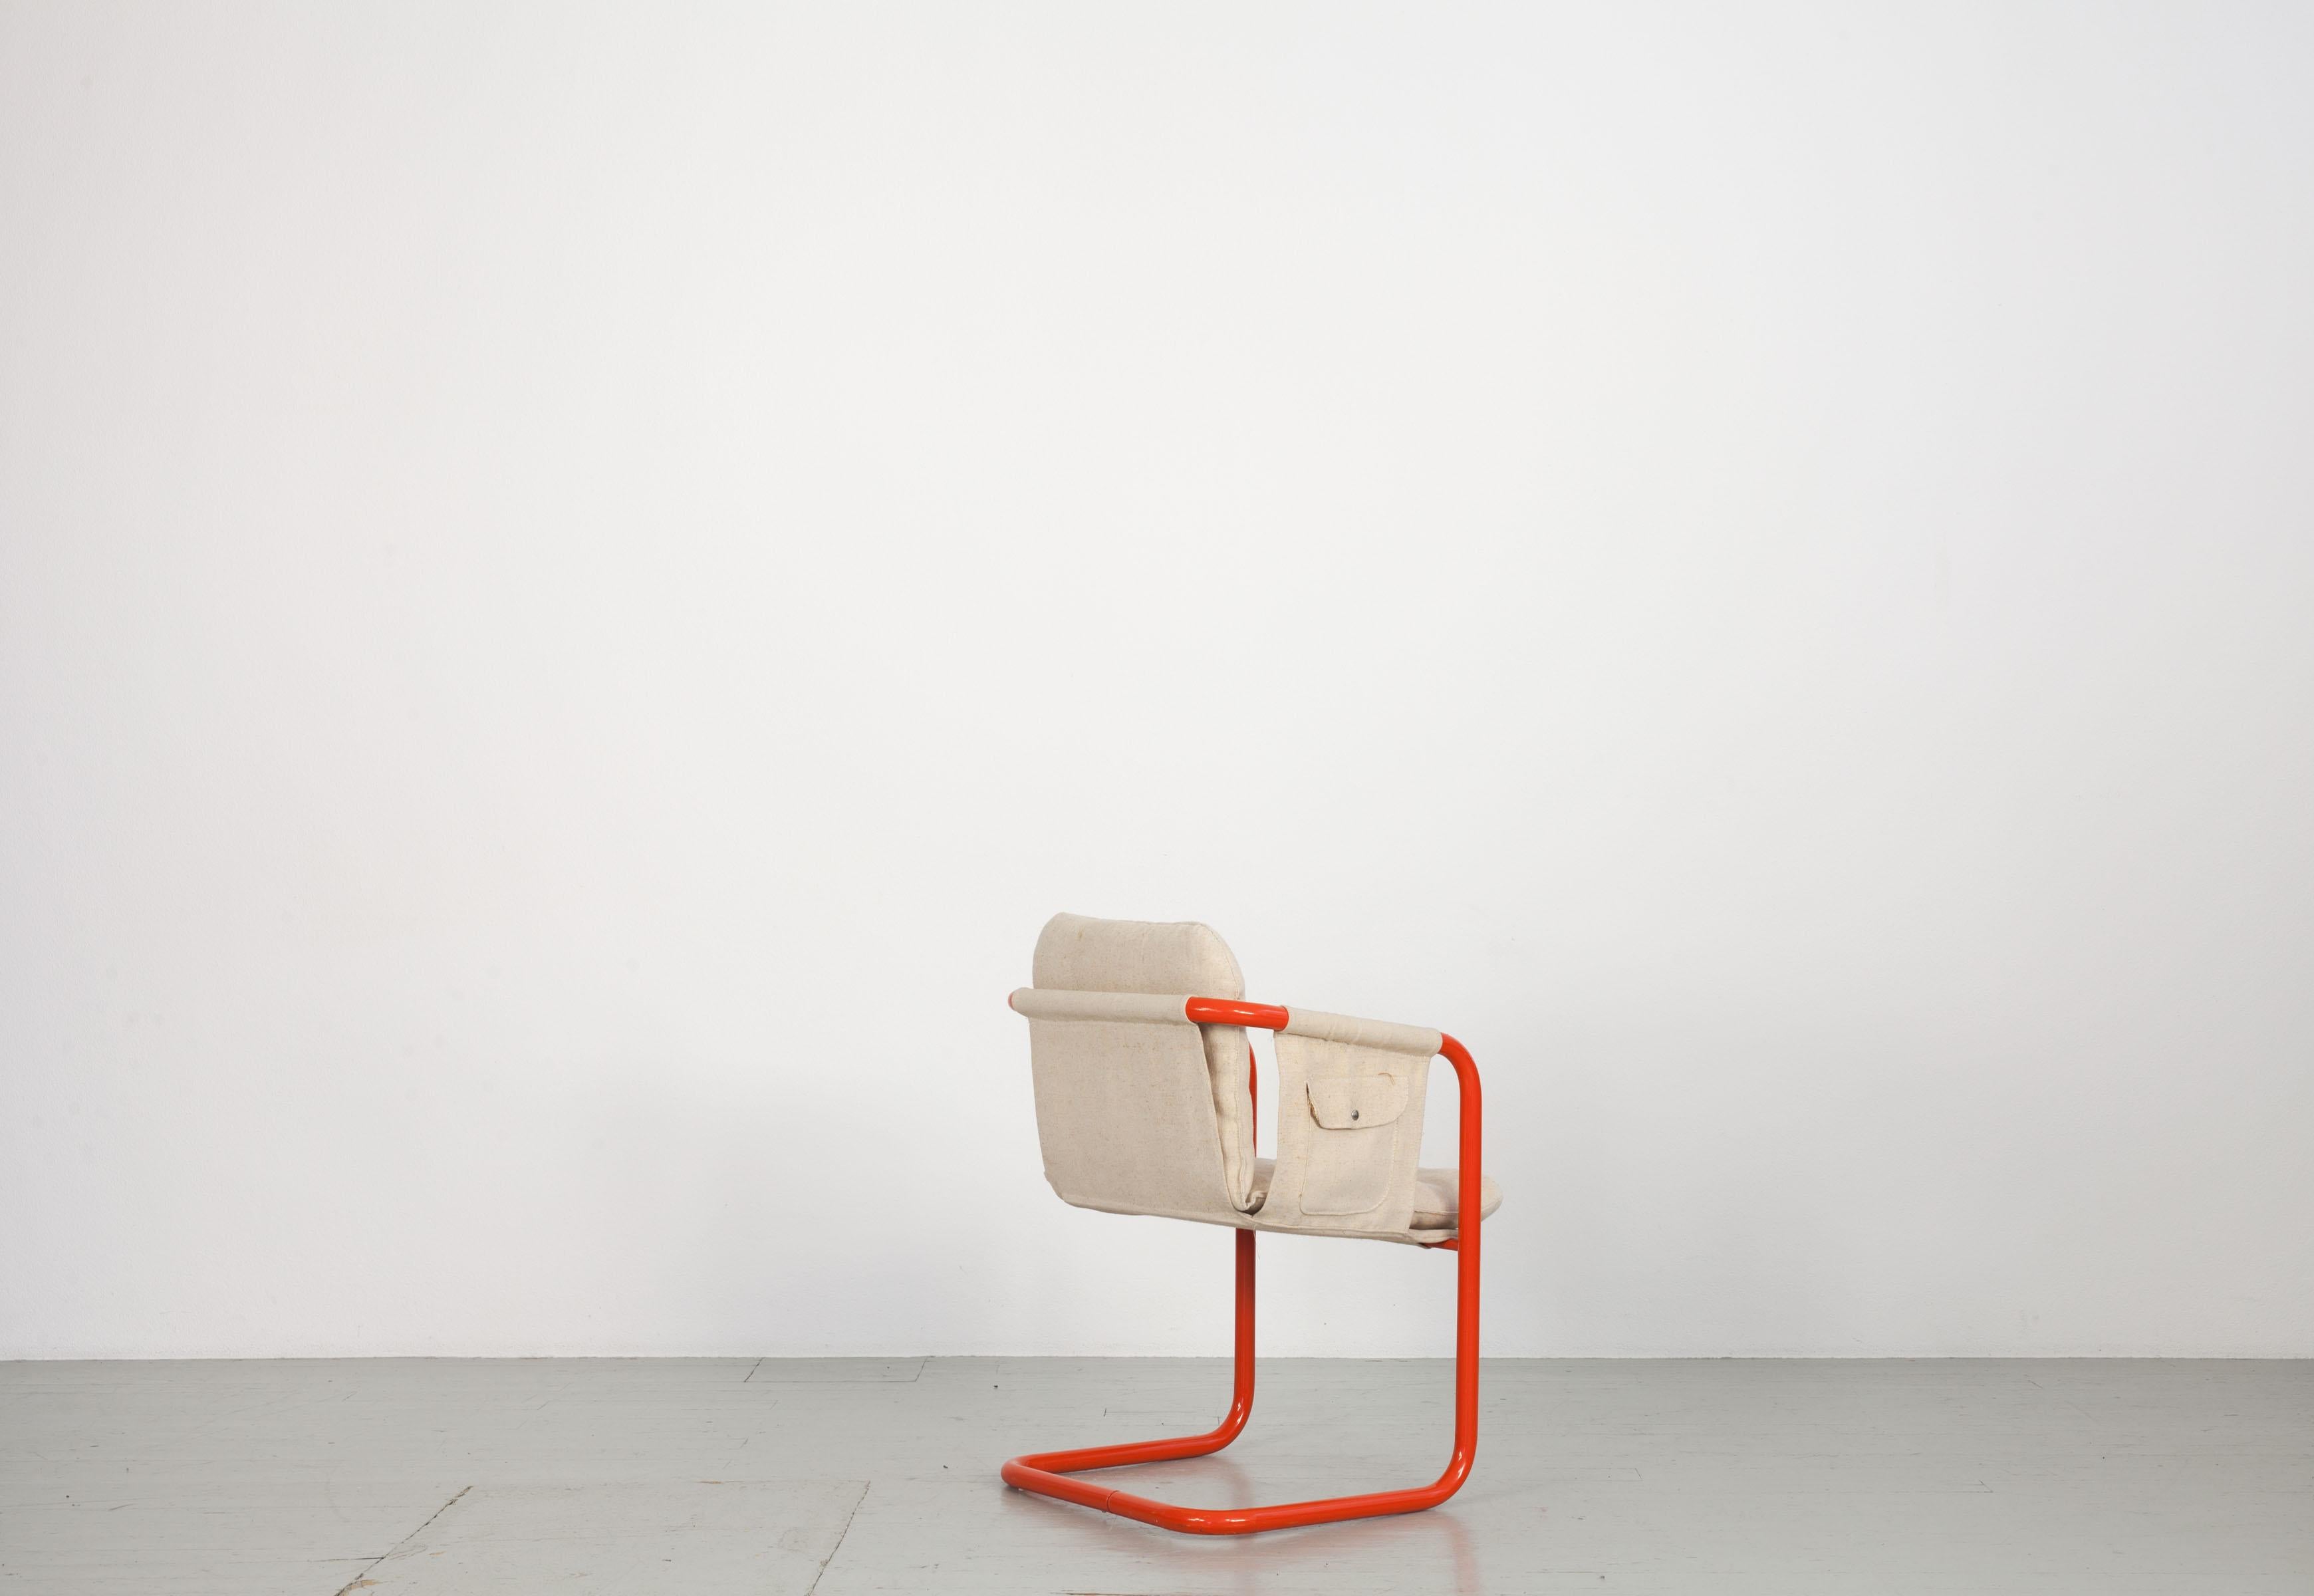 Cet ensemble de 2 chaises a été réalisé dans le style de Gae Aulenti. Le revêtement en lin clair contraste avec le cadre en acier tubulaire orange. Les chaises sont en bon état.
N'hésitez pas à nous contacter pour plus d'informations